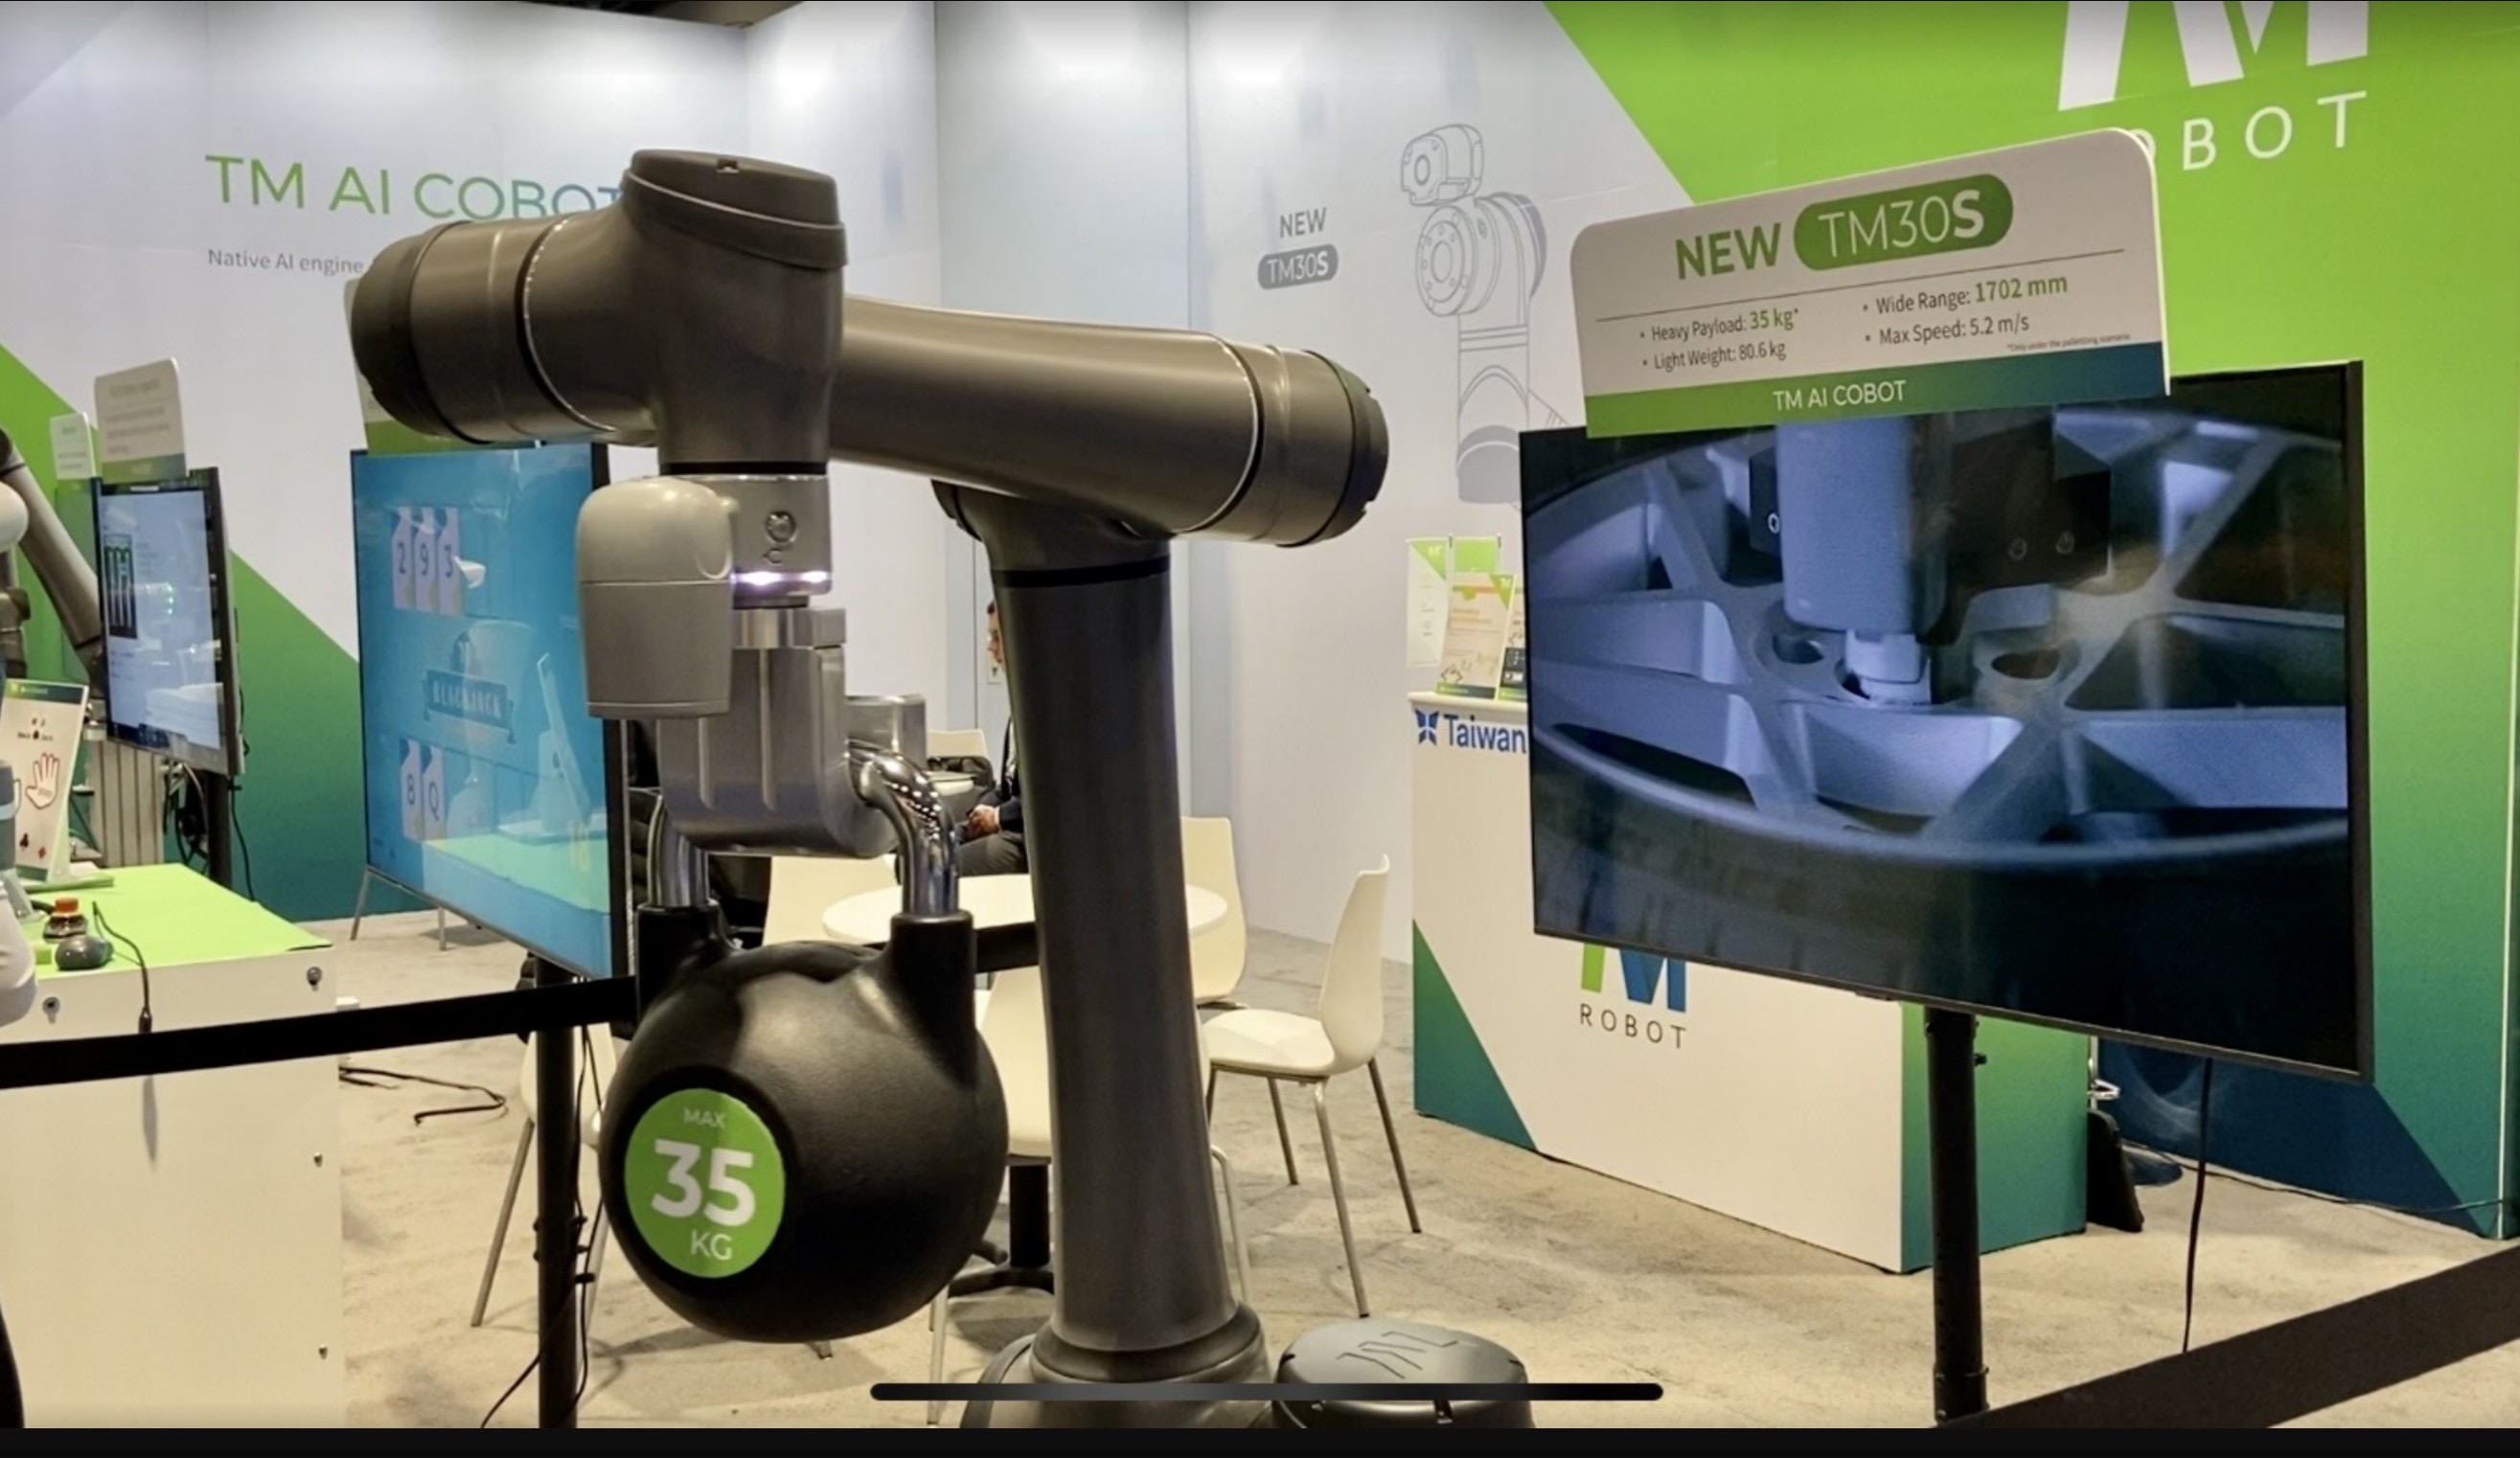 达明机器人于美国Automate全球首发新品TM30S。